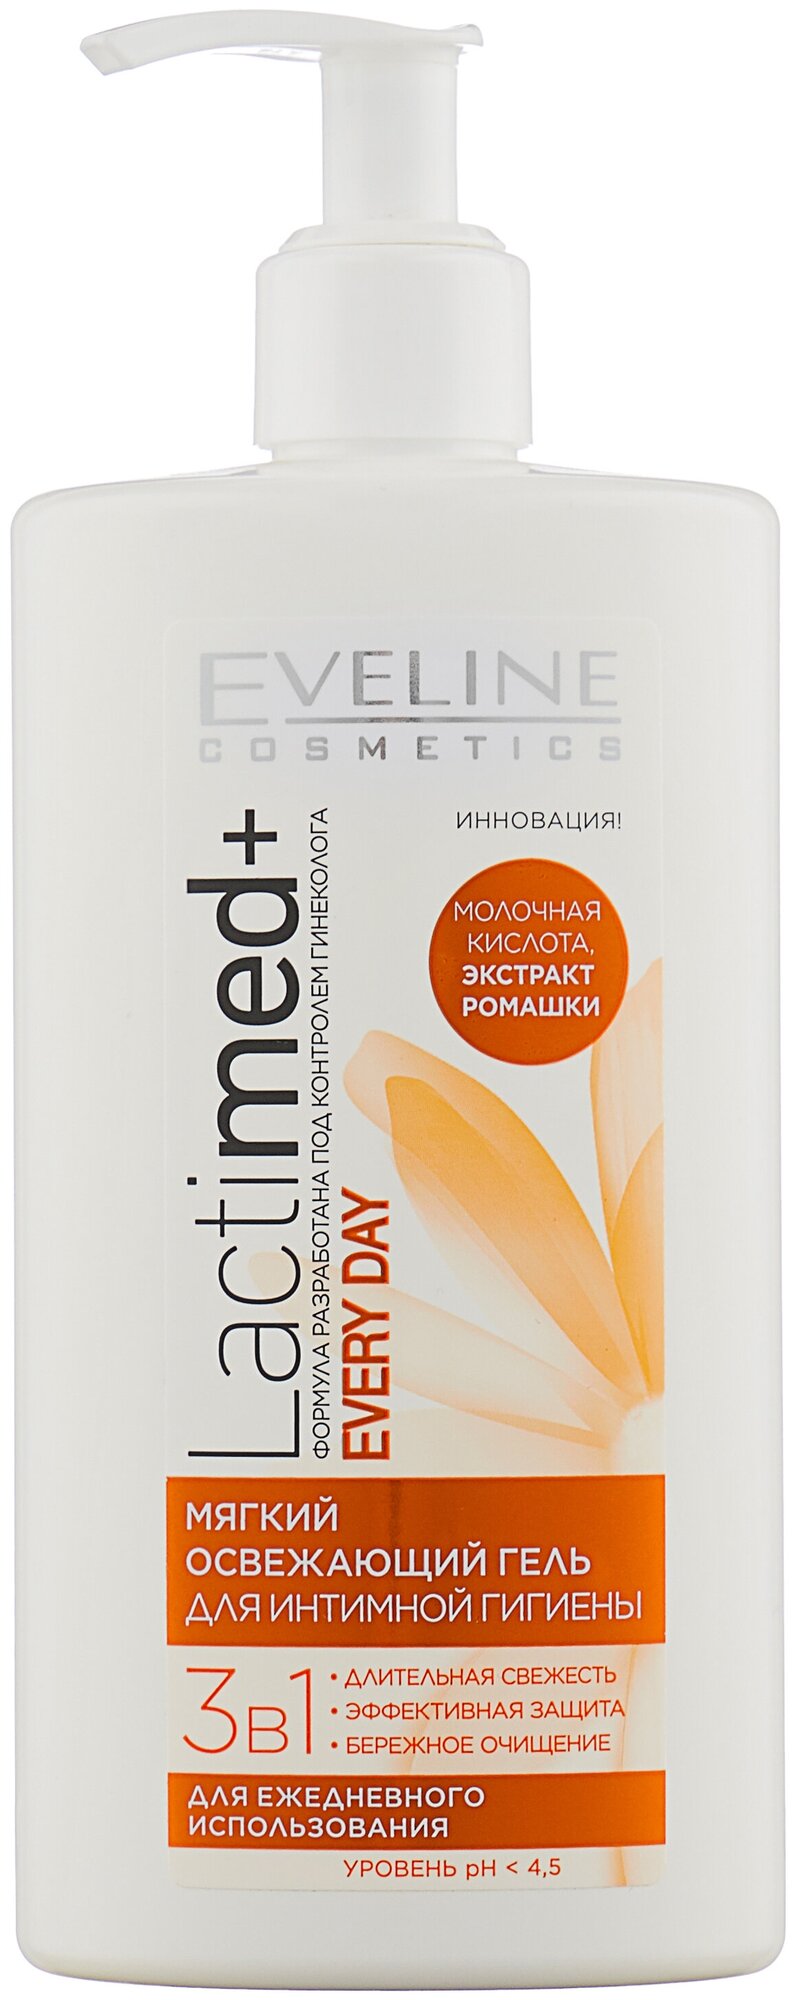 Eveline Cosmetics Мягкий освежающий гель для интимной гигиены LACTIMED+ 3в1 Every Day